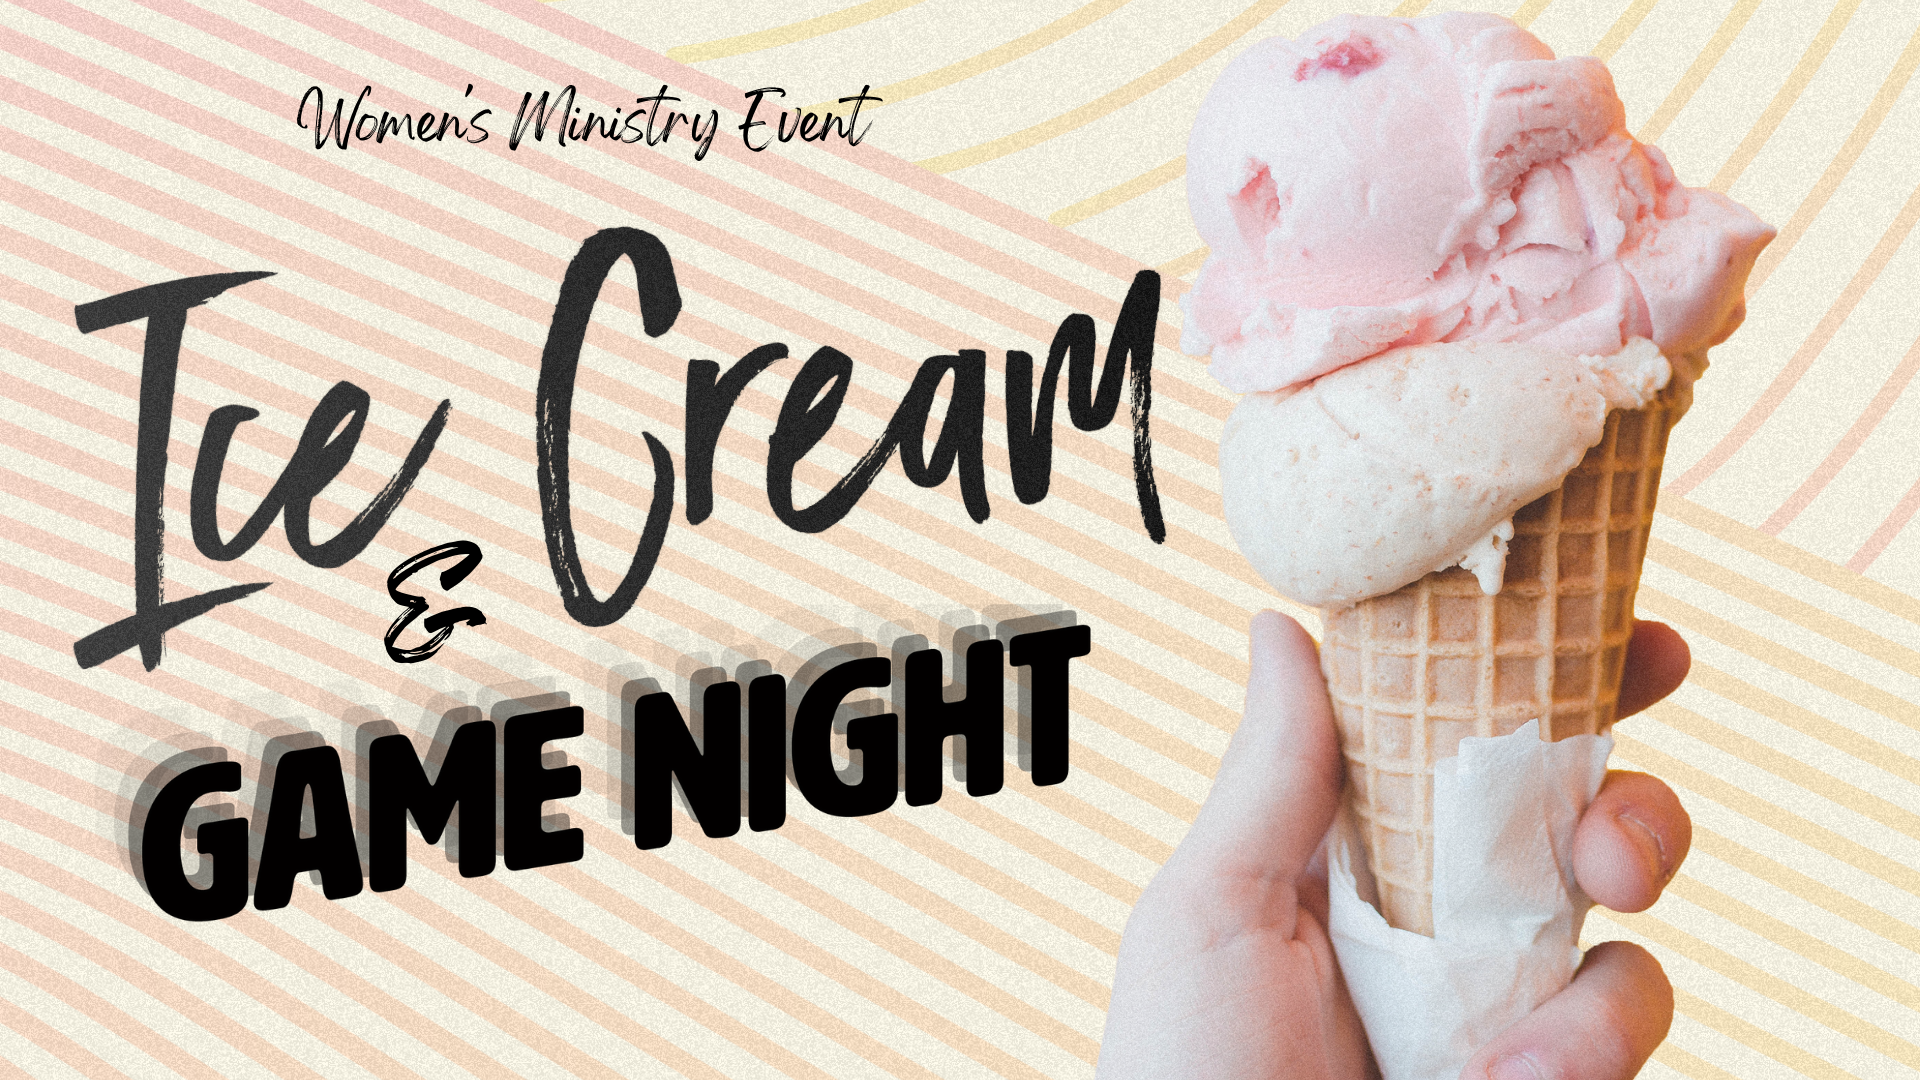 Women's Ministry Ice Cream & Game Night